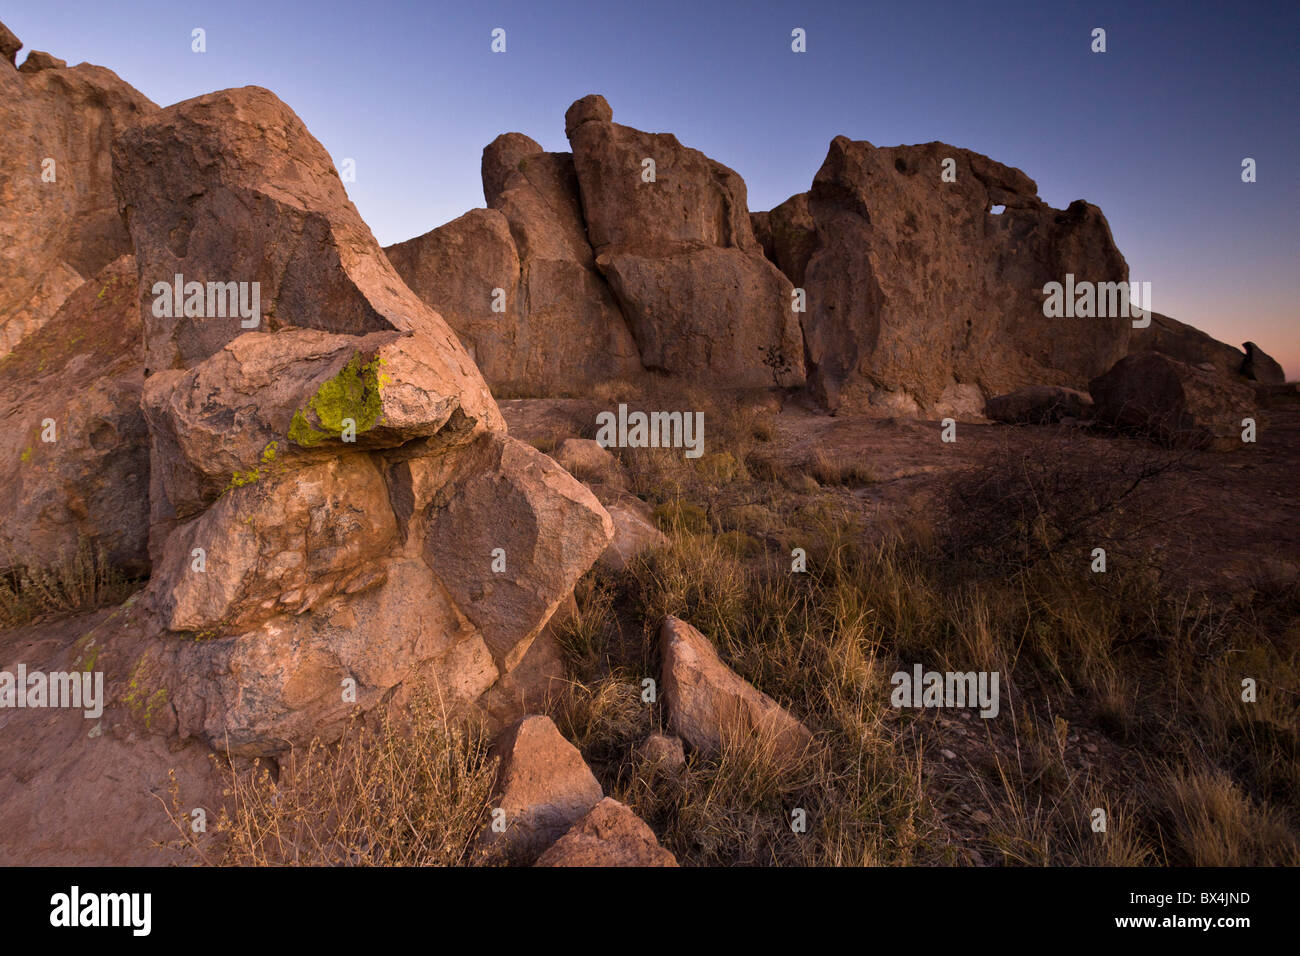 Formata da ceneri vulcaniche 30 milioni di anni fa, l'esclusivo Monolithic formazioni rocciose dominano la città di roccia del parco statale nel Nuovo Messico, Stati Uniti d'America. Foto Stock